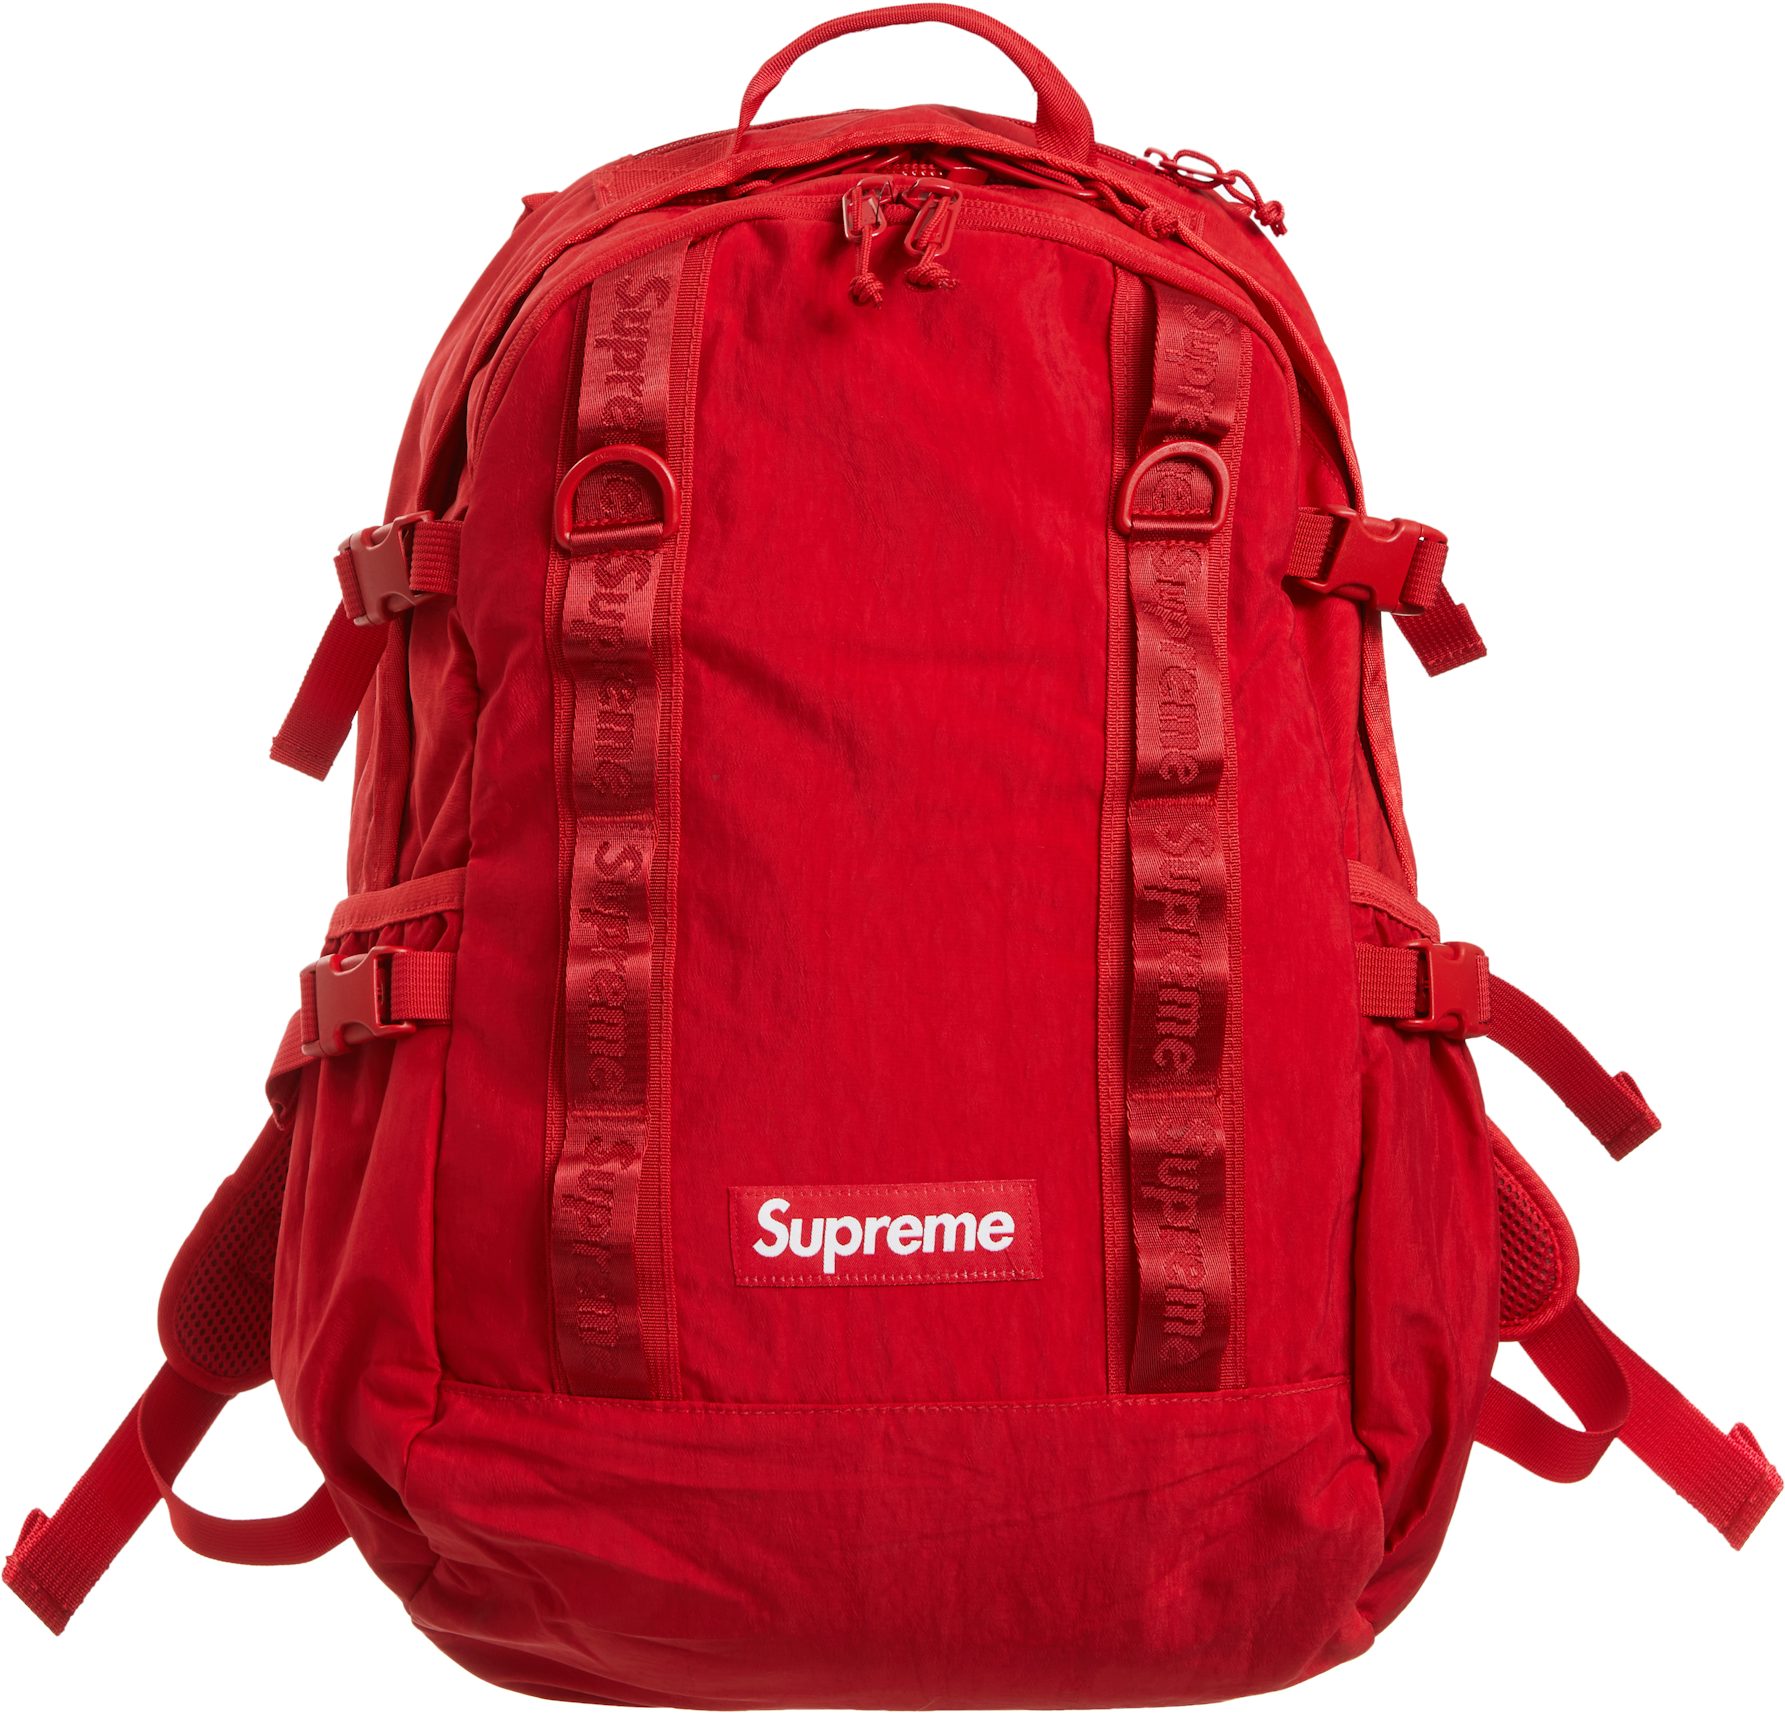 Supreme Backpack (FW18) Black  Supreme backpack, Train backpack